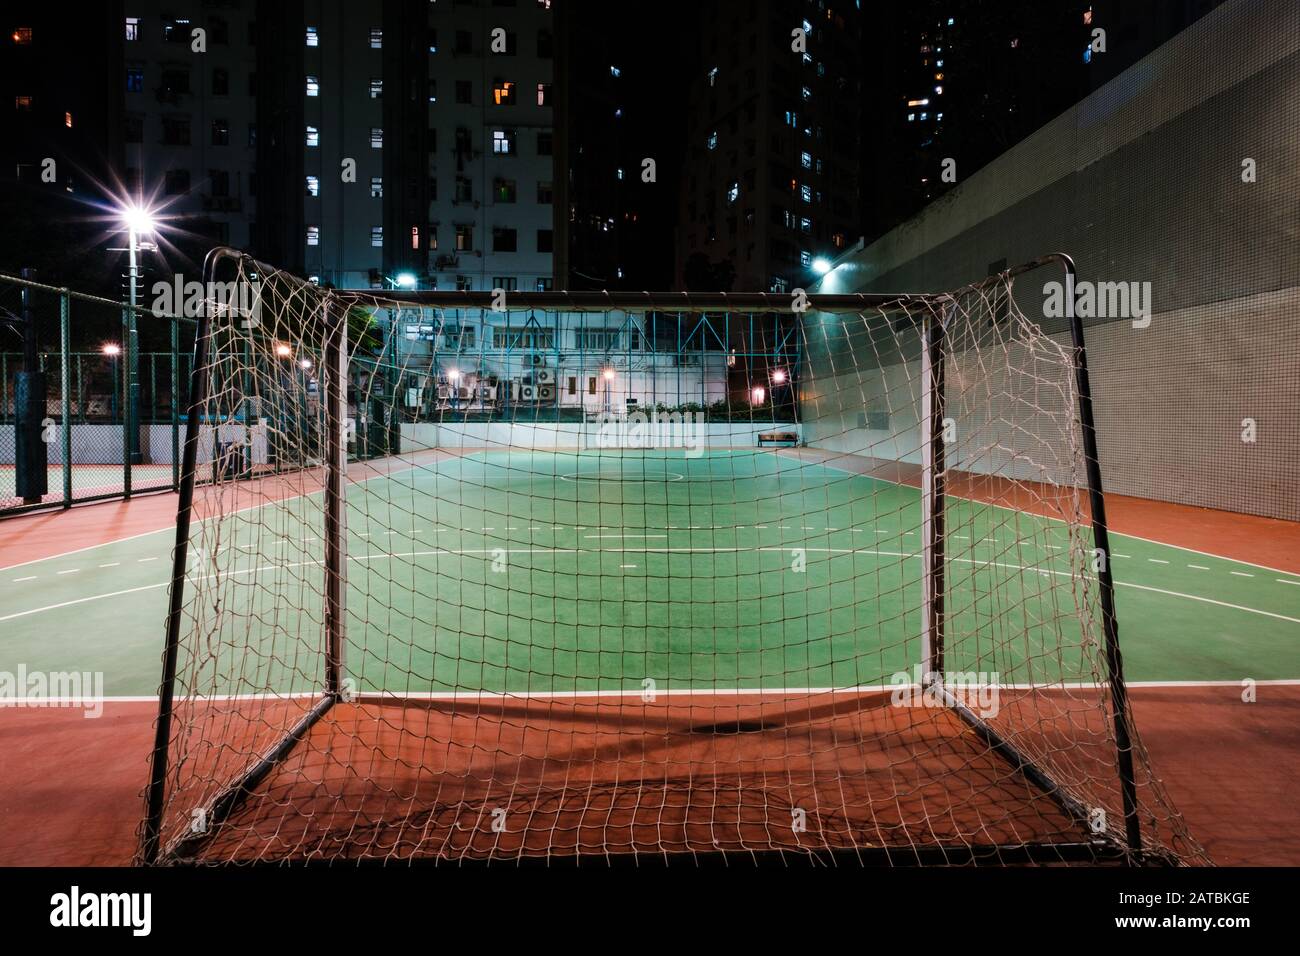 obiettivo di calcio sul campo sportivo in città di notte - Foto Stock